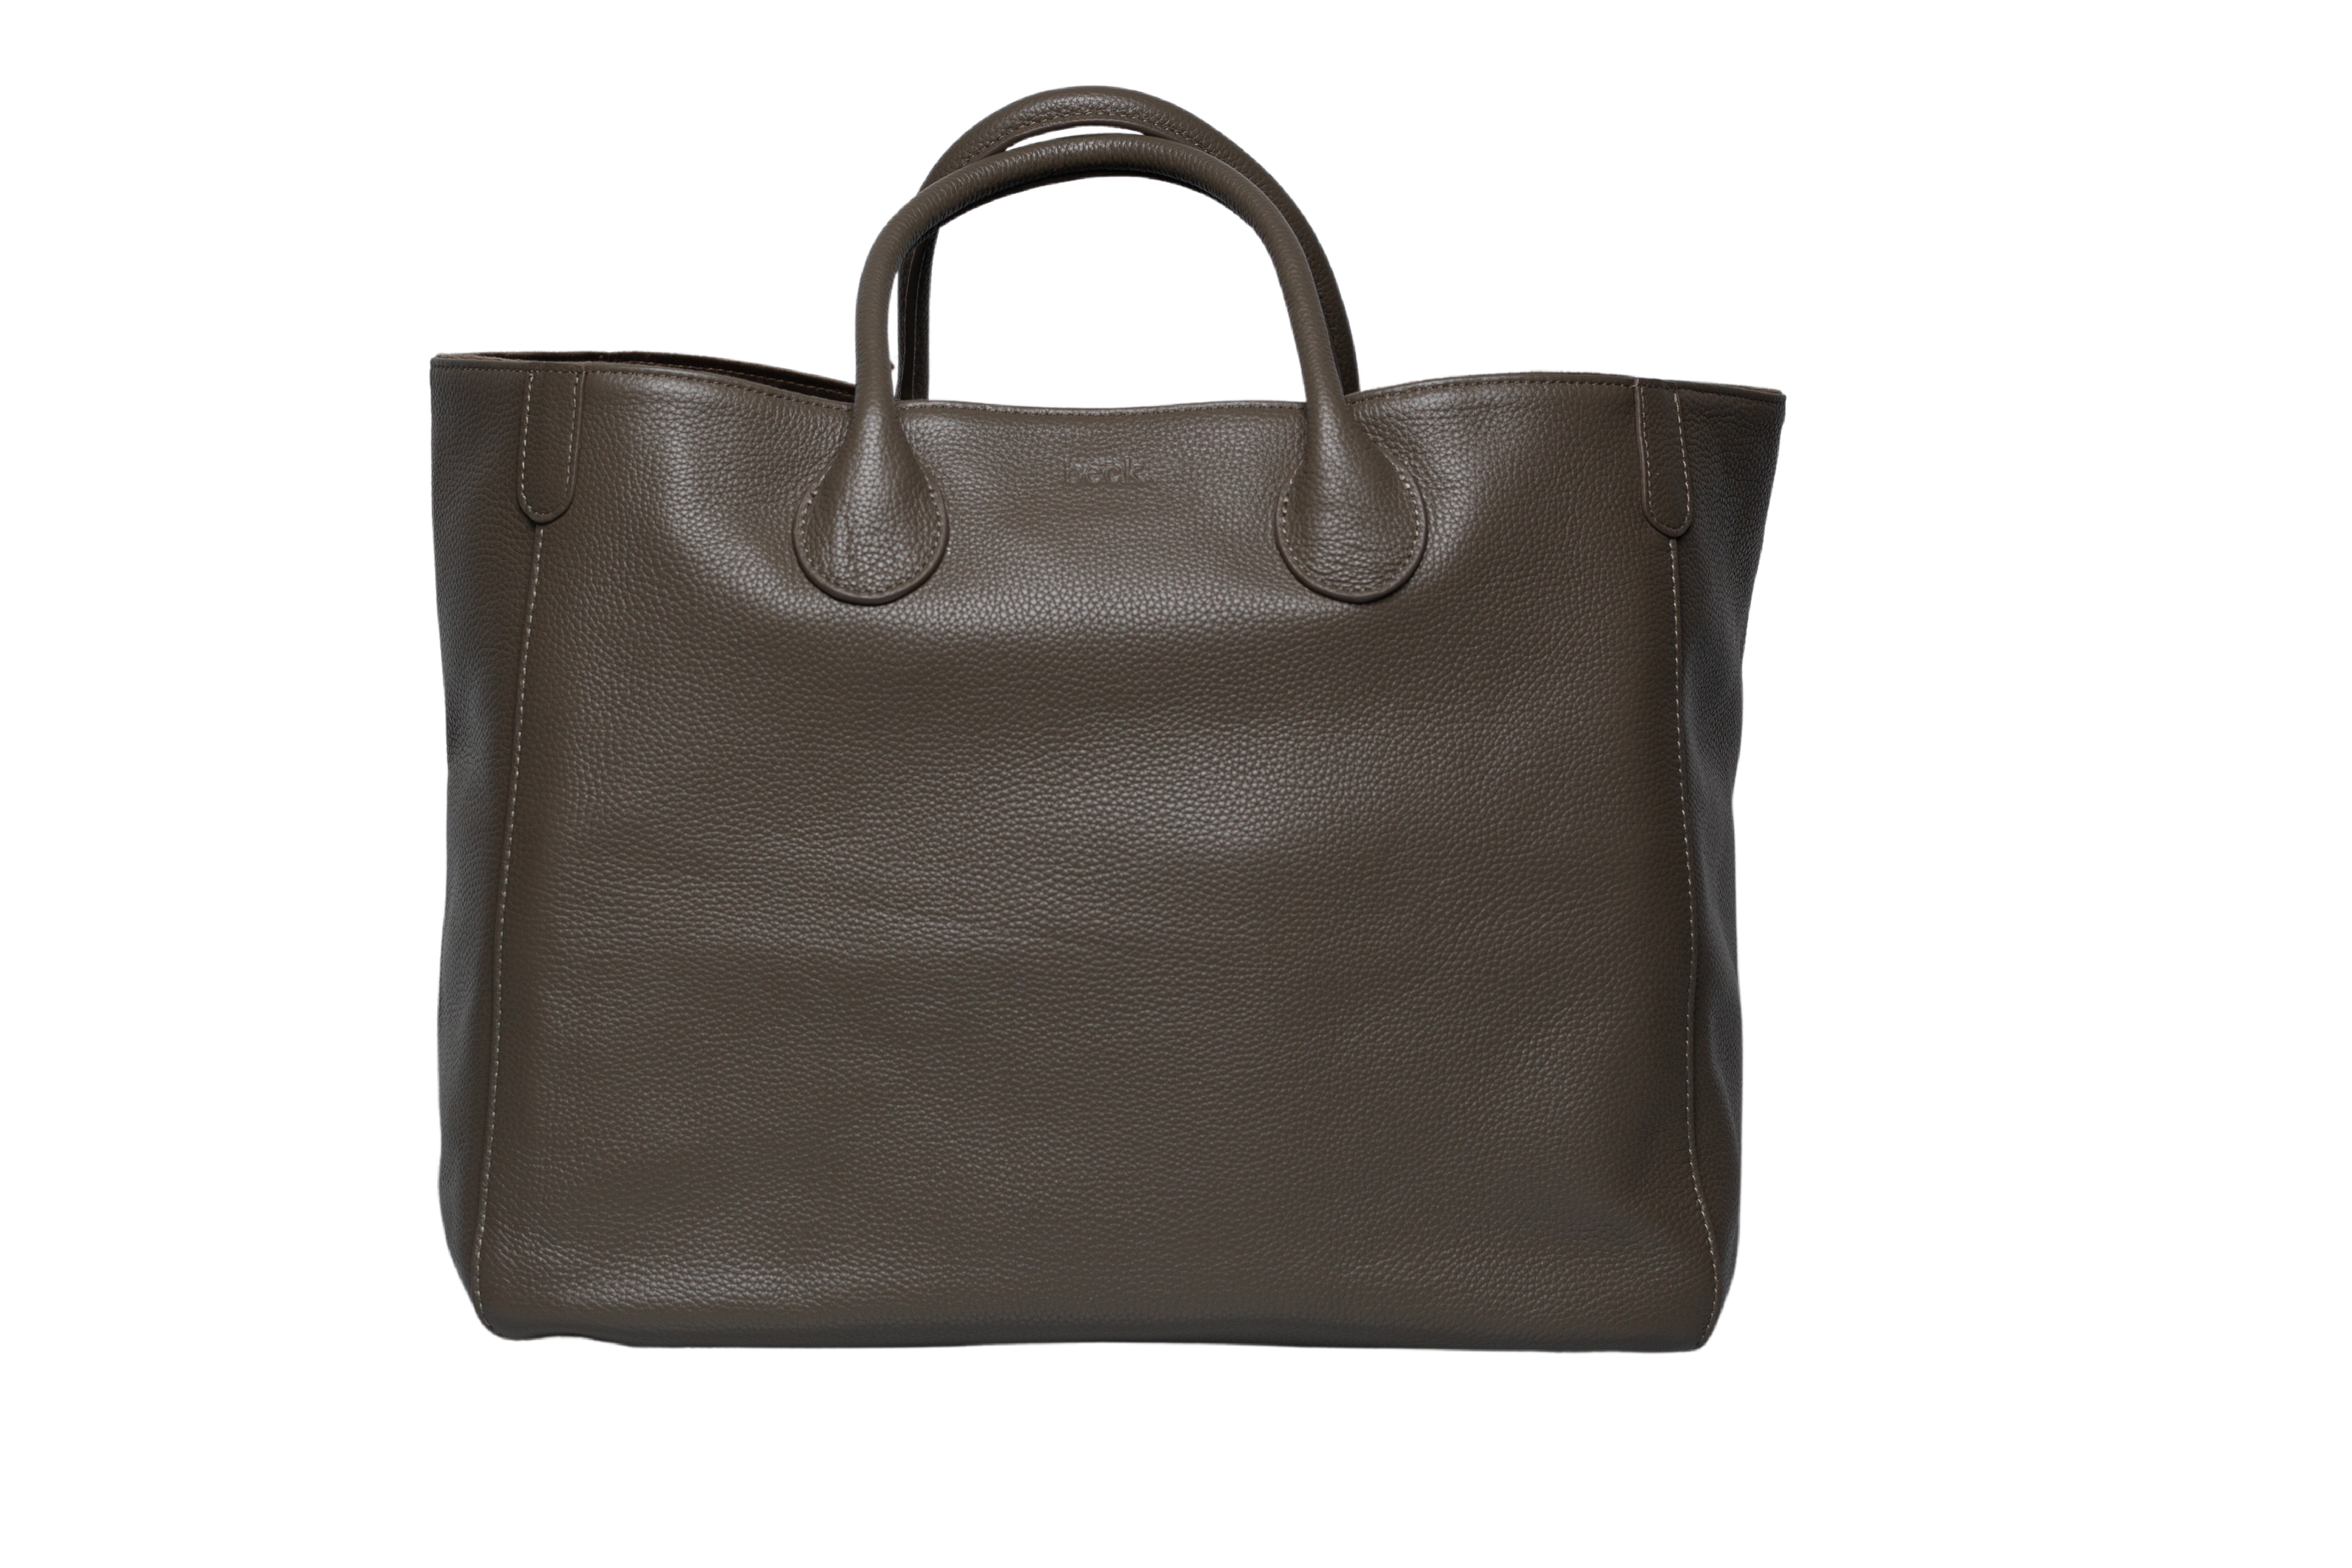 Longchamp x EU Le Pliage Tote Bag - Farfetch